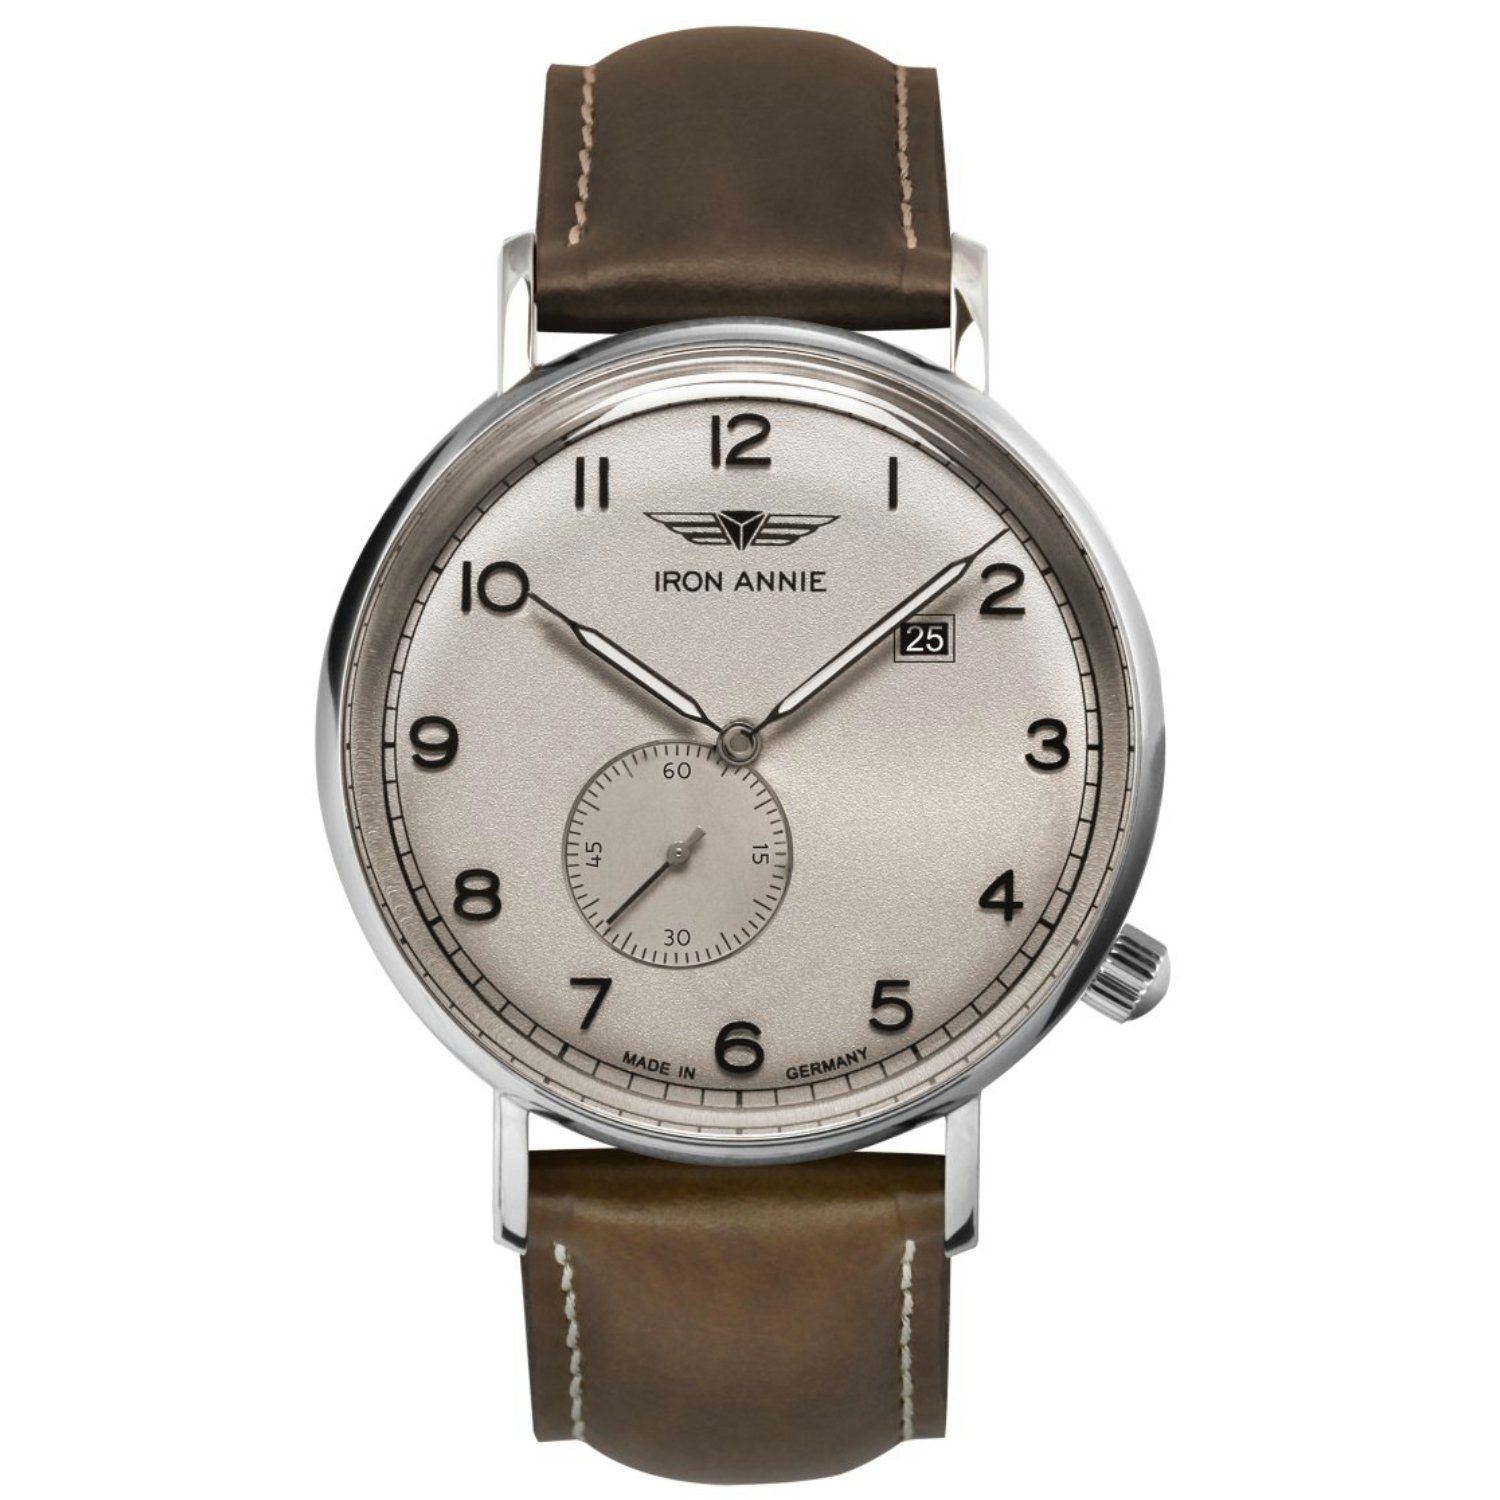 5934-5, Quarzuhr schöne ANNIE IRON zum Sehr günstigen Preis Armbanduhr